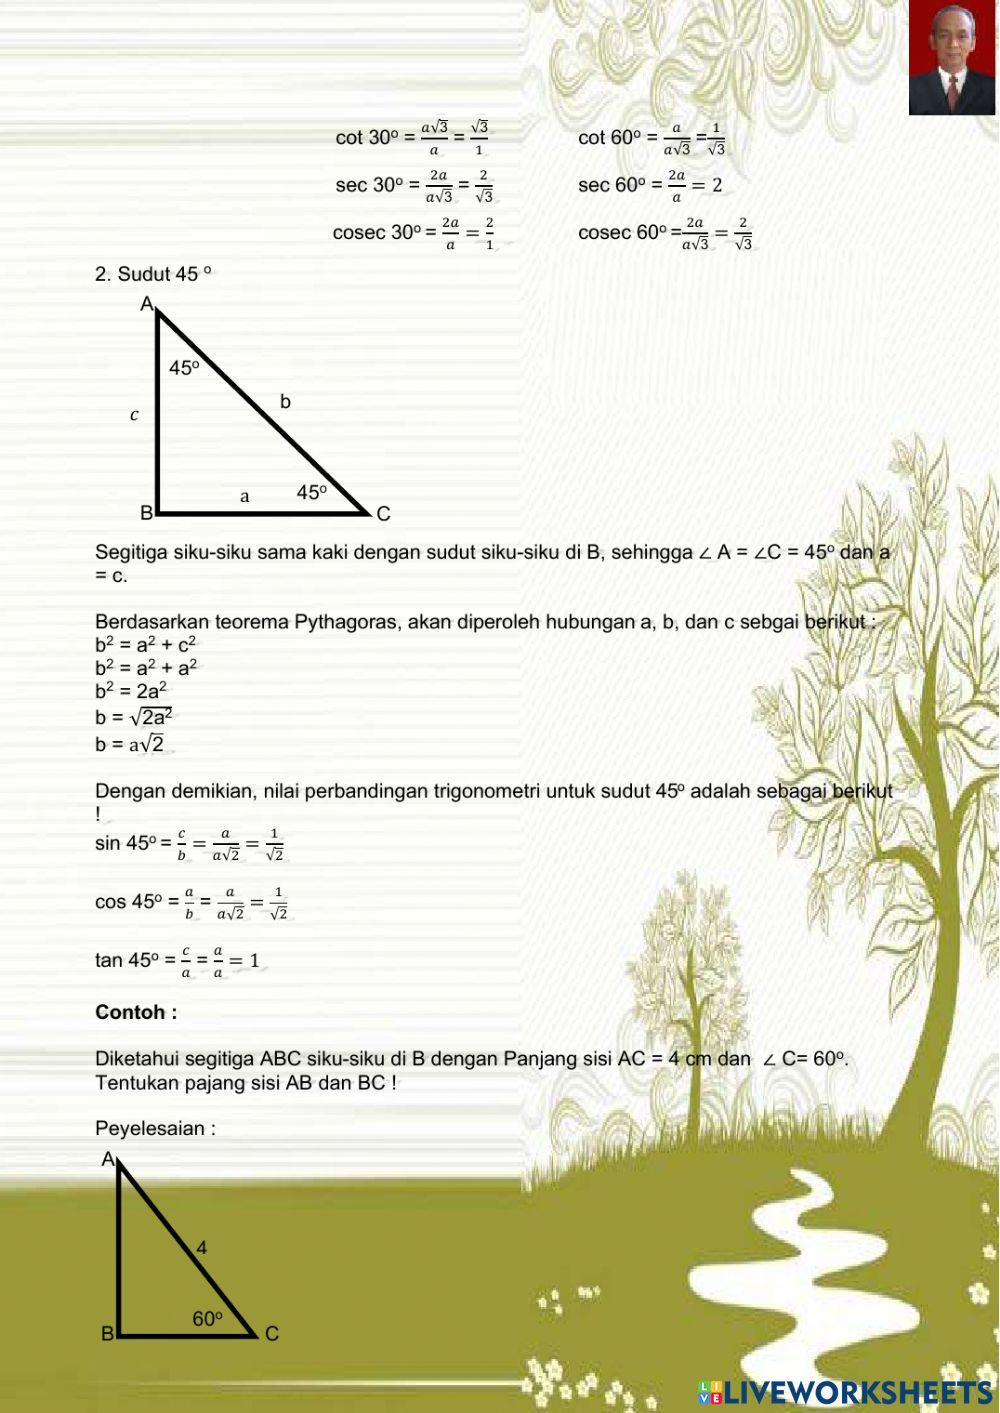 Perbandingan trigonometri pada segitiga sudut-sudut khusus